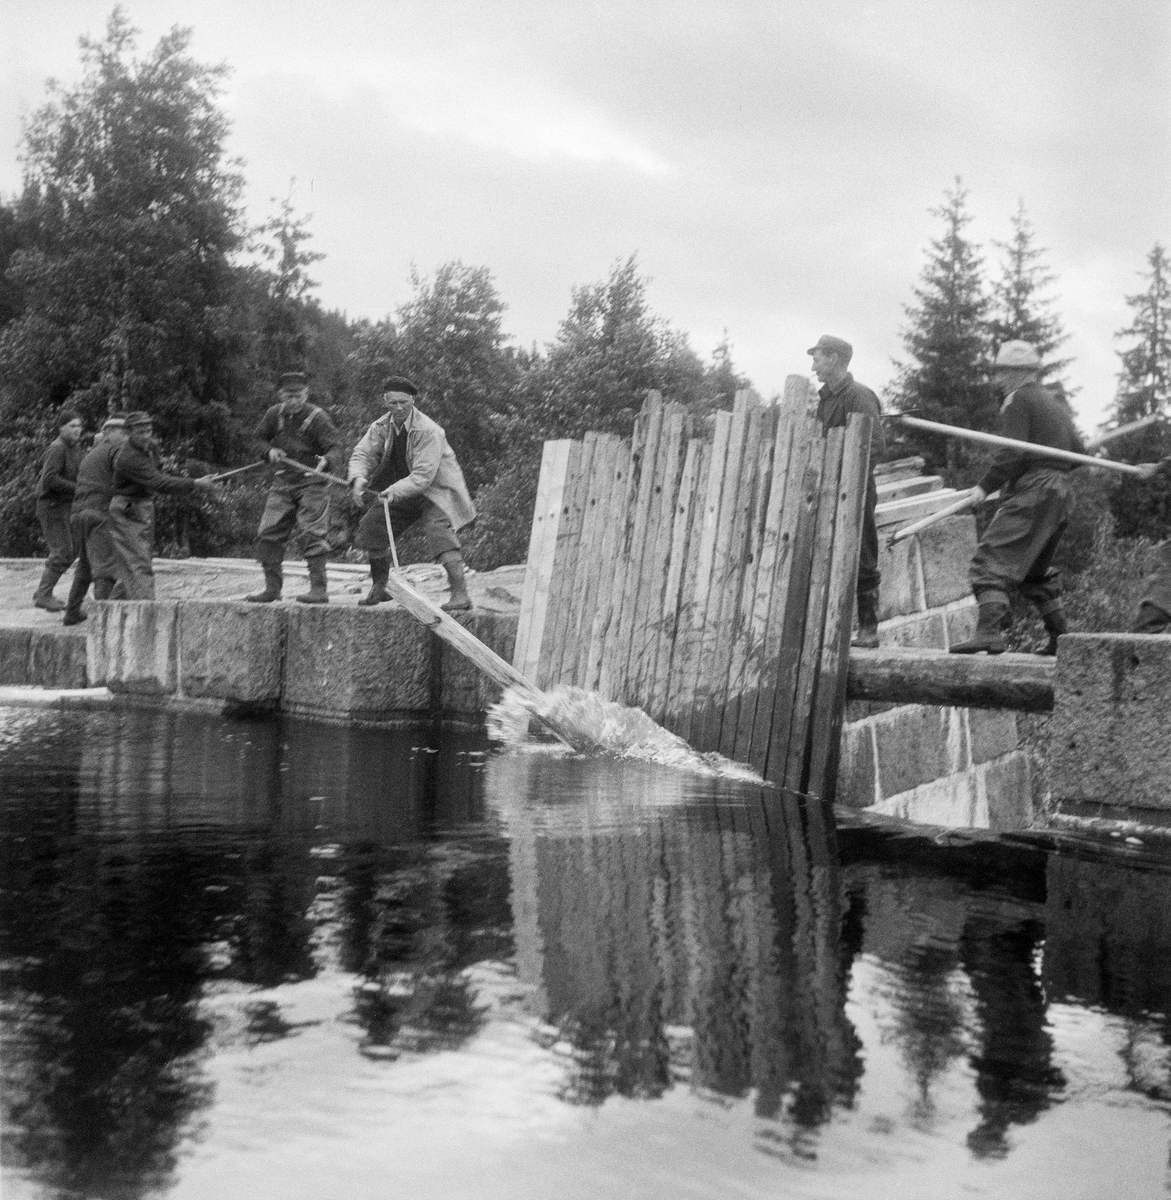 Spretting av «nålene» som stengte Øyungsdammen i Nordmarka i Oslo kommune i 1956.  Fotografiet er tatt fra damsida.  Dammen var murt av kvadret naturstein med sementfuger.  Da dette bildet ble tatt sto fem karer på damarmen til venstre og dro ei av «nålene» (damplankene) fra damåpningen til sides, ved hjelp av et tau som var tredd gjennom et hull i den øvre enden av nåla.  Et par karer sto på ei smal dambru bakenfor de gjenstående nålene.  Denne damtypen – nåledammen – hadde altså stengsler som besto av planker, som når dammen skulle «settes» ble stukket motstrøms slik at de ble presset mot en terskel i botnen av damløpet og mot overkanten av dambrua.  Når disse ble stående tett i tett dannet de en vegg som gjorde det mulig å magasinere mye vann i det ovenforliggende bassenget.  Når dammen seinere skille «sprettes», brukte damkarene, som dette fotografiet viser, et tau med en pinne eller jerntein i den ene enden til å trekke vekk den ene nåla etter den andre.  

Fløting. Tømmerfløtere.